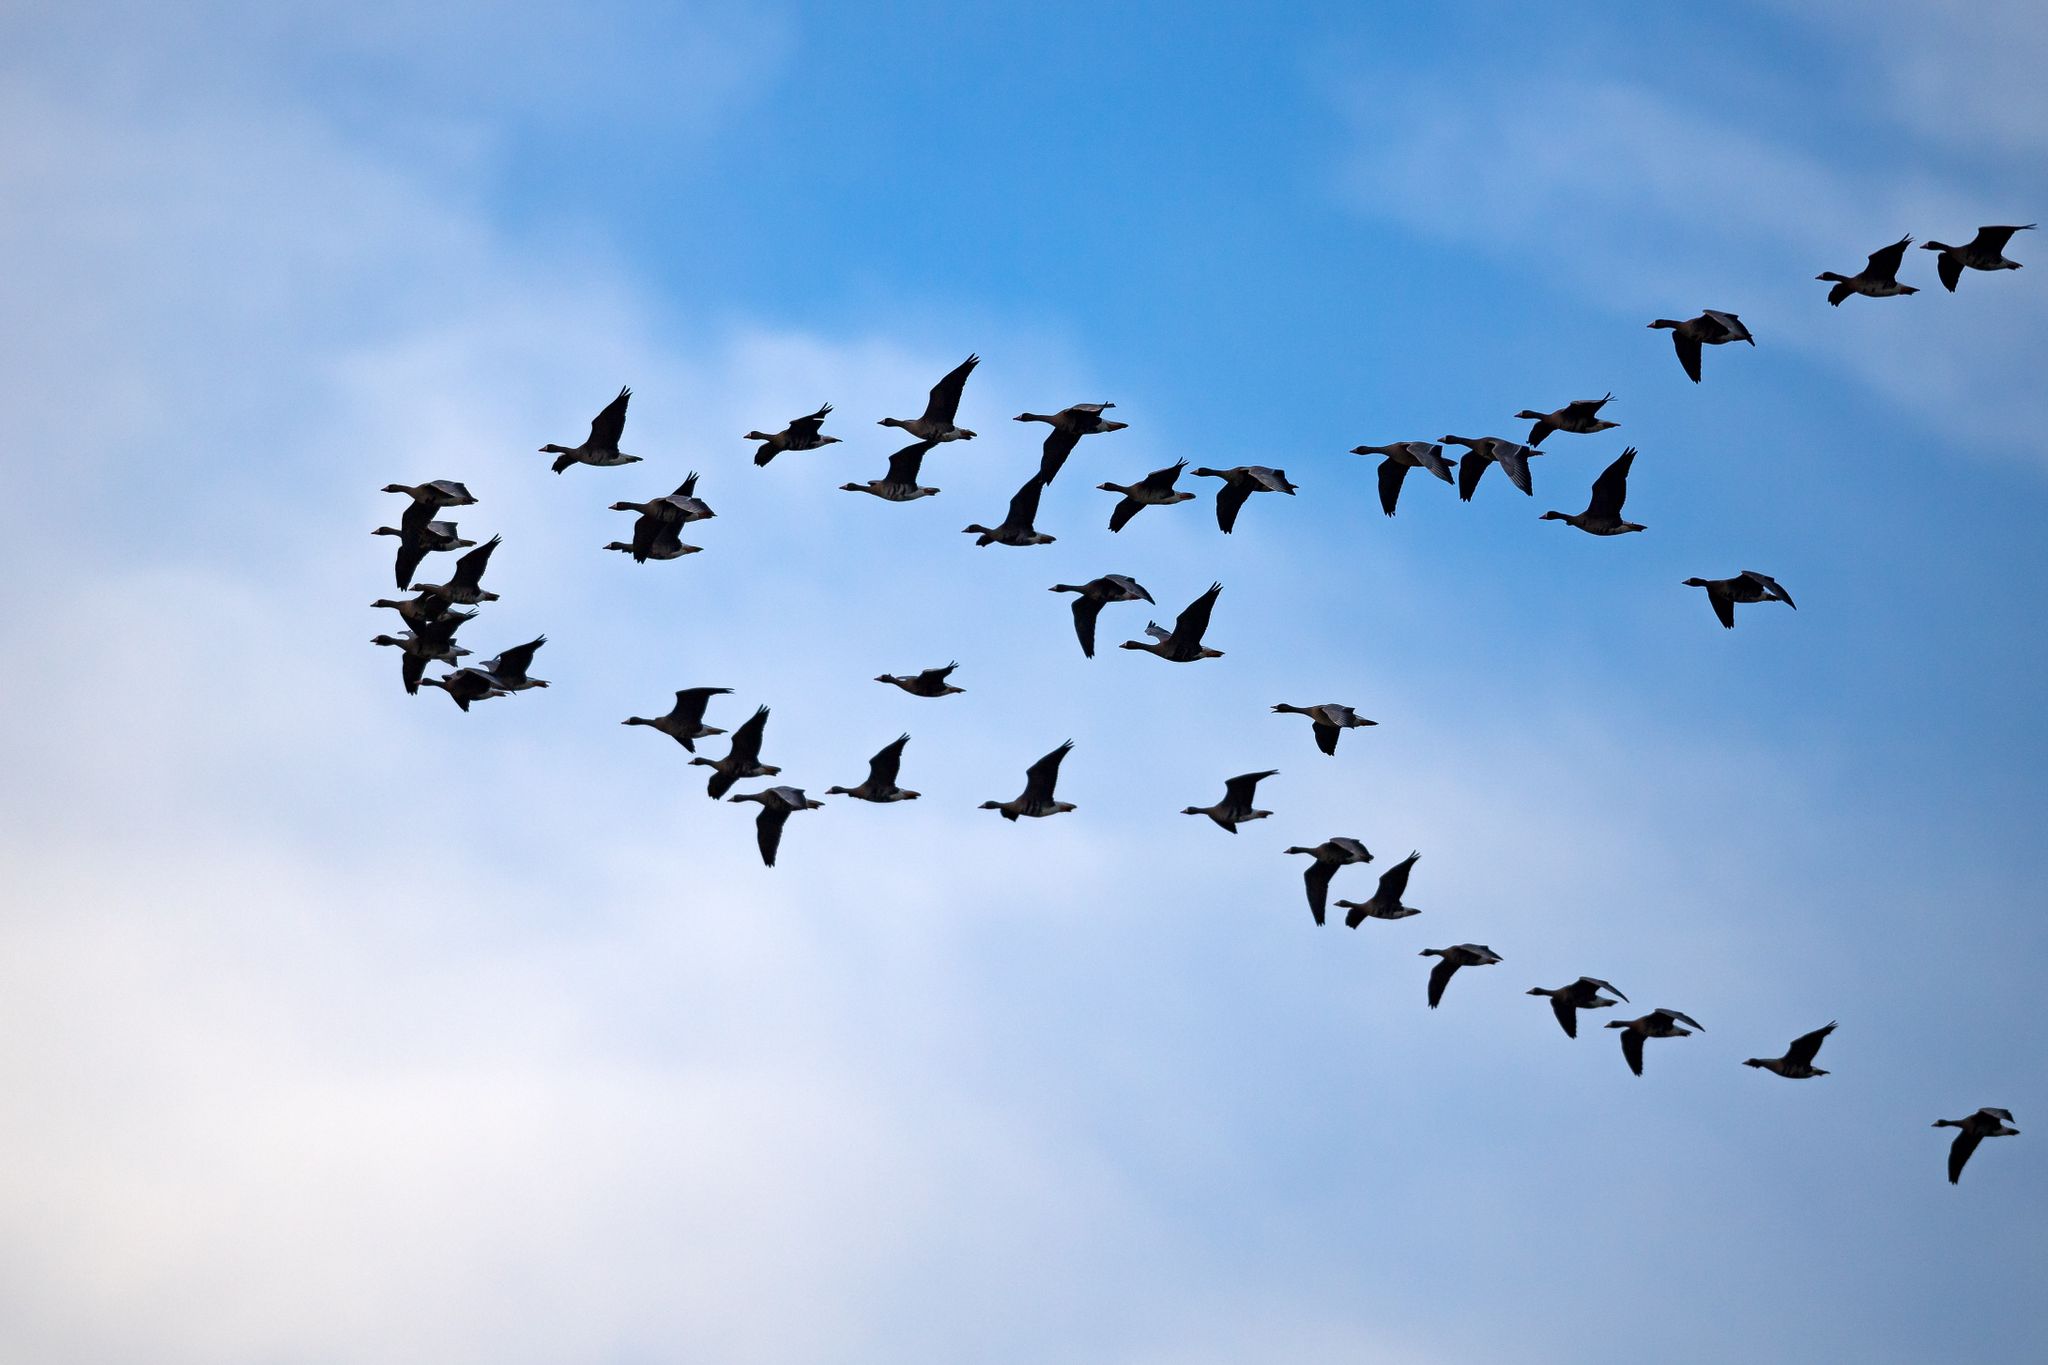 Zugvögel fliegen am Himmel.